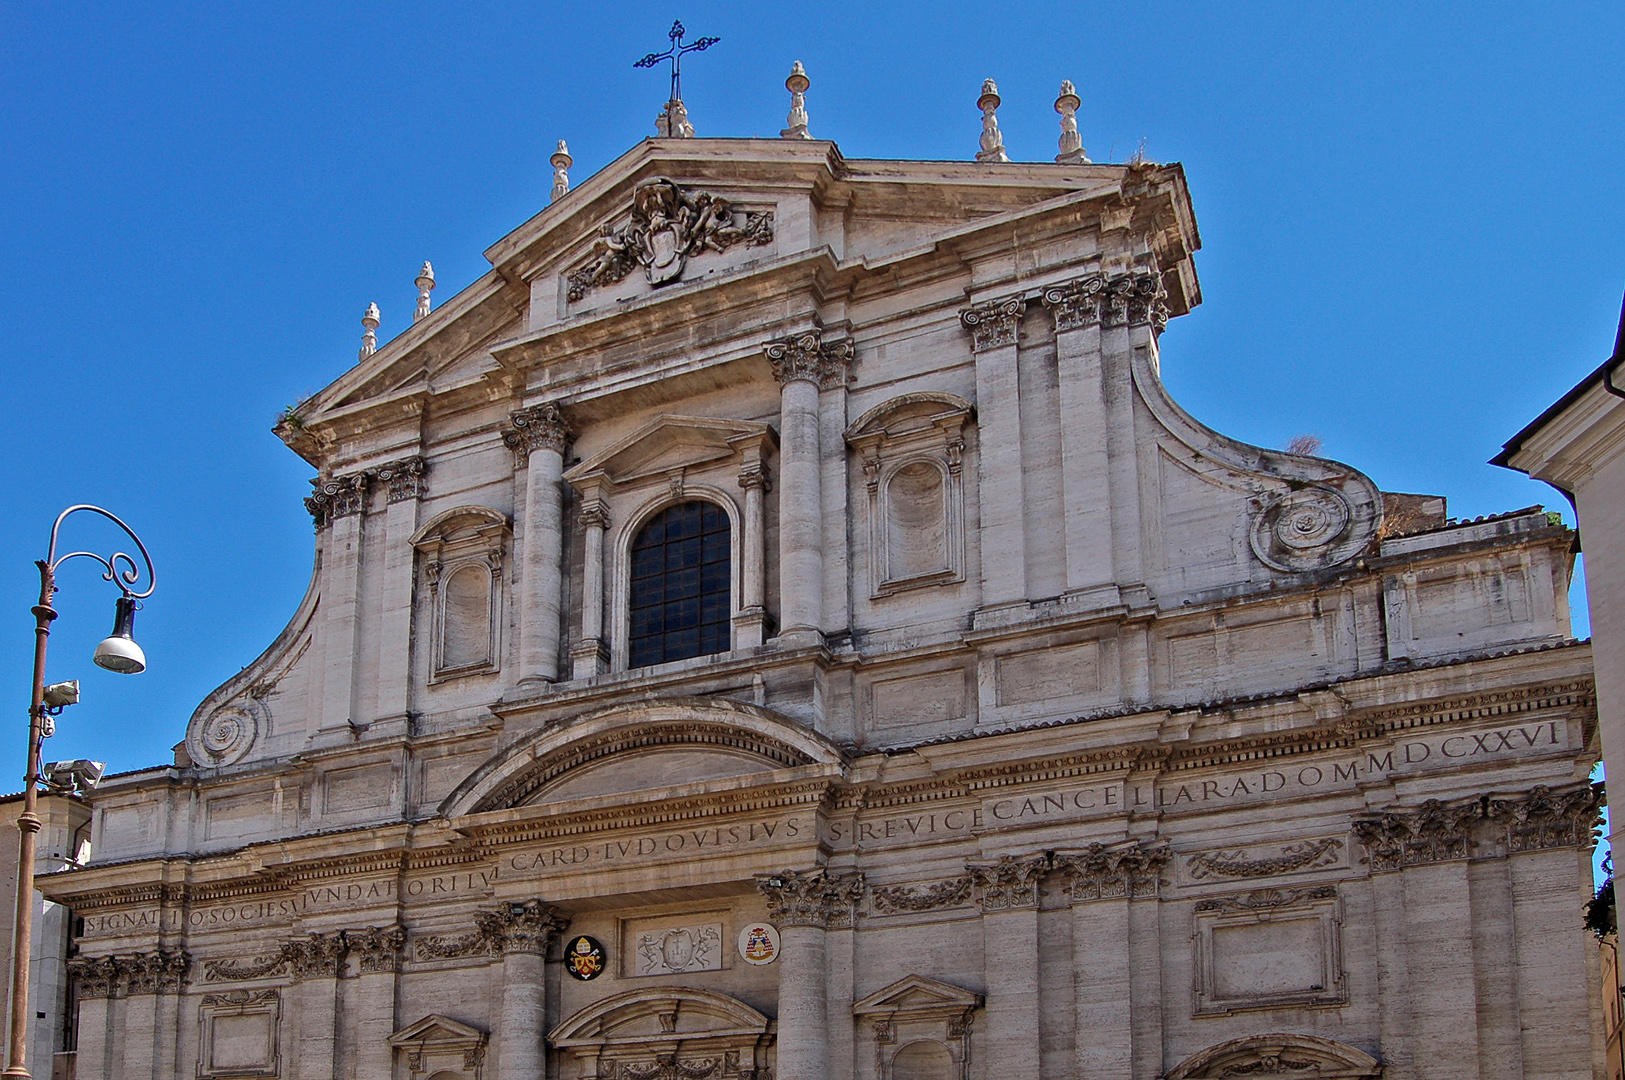 Kerk van Sint-Ignatius. Rome, Itali., Church of Saint Ignatius, Rome, Italy